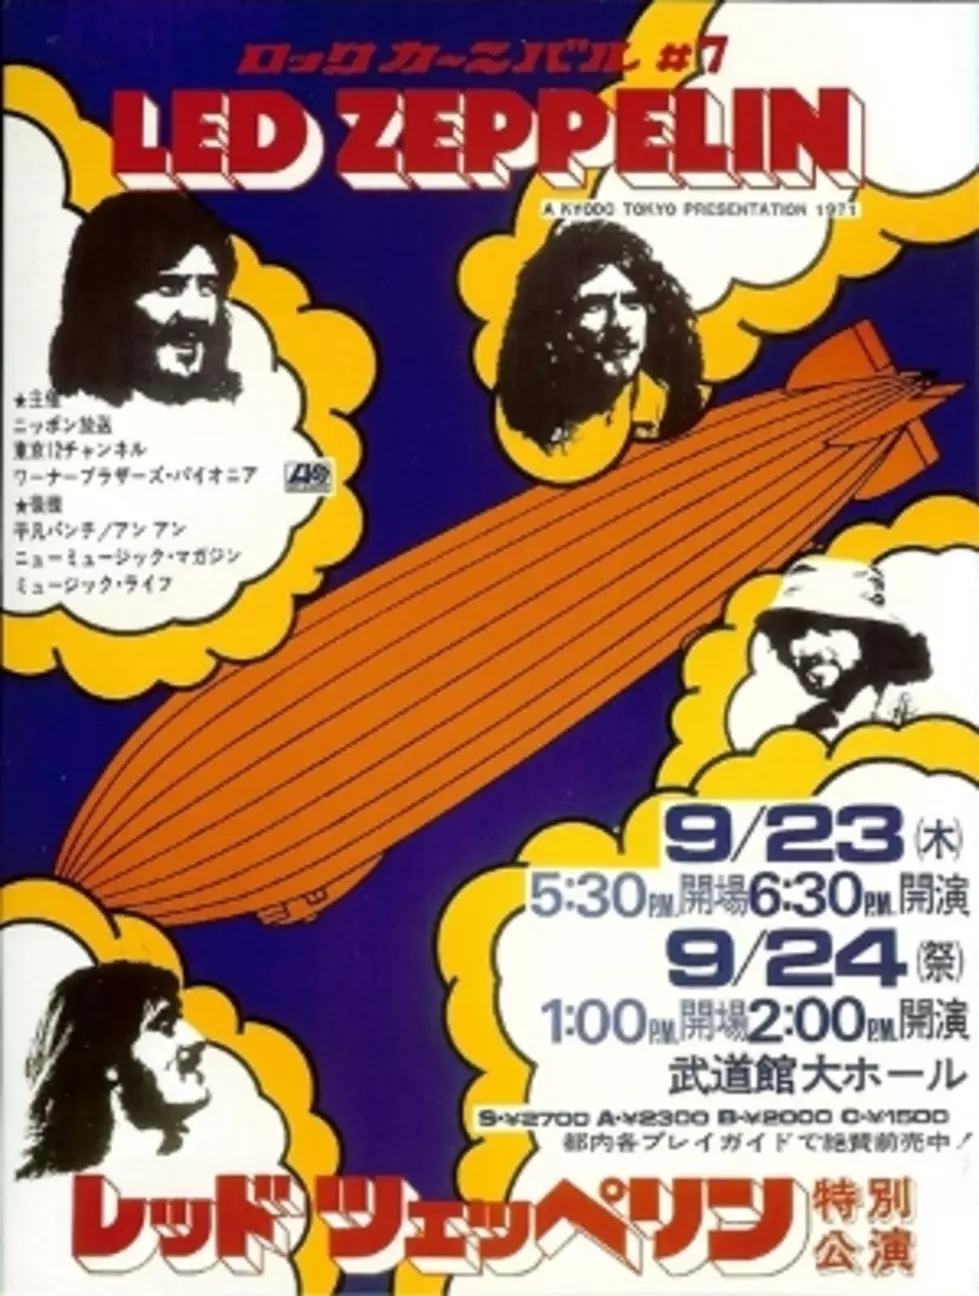 Led Zeppelin Tour Poster Sells For $2,200 on eBay